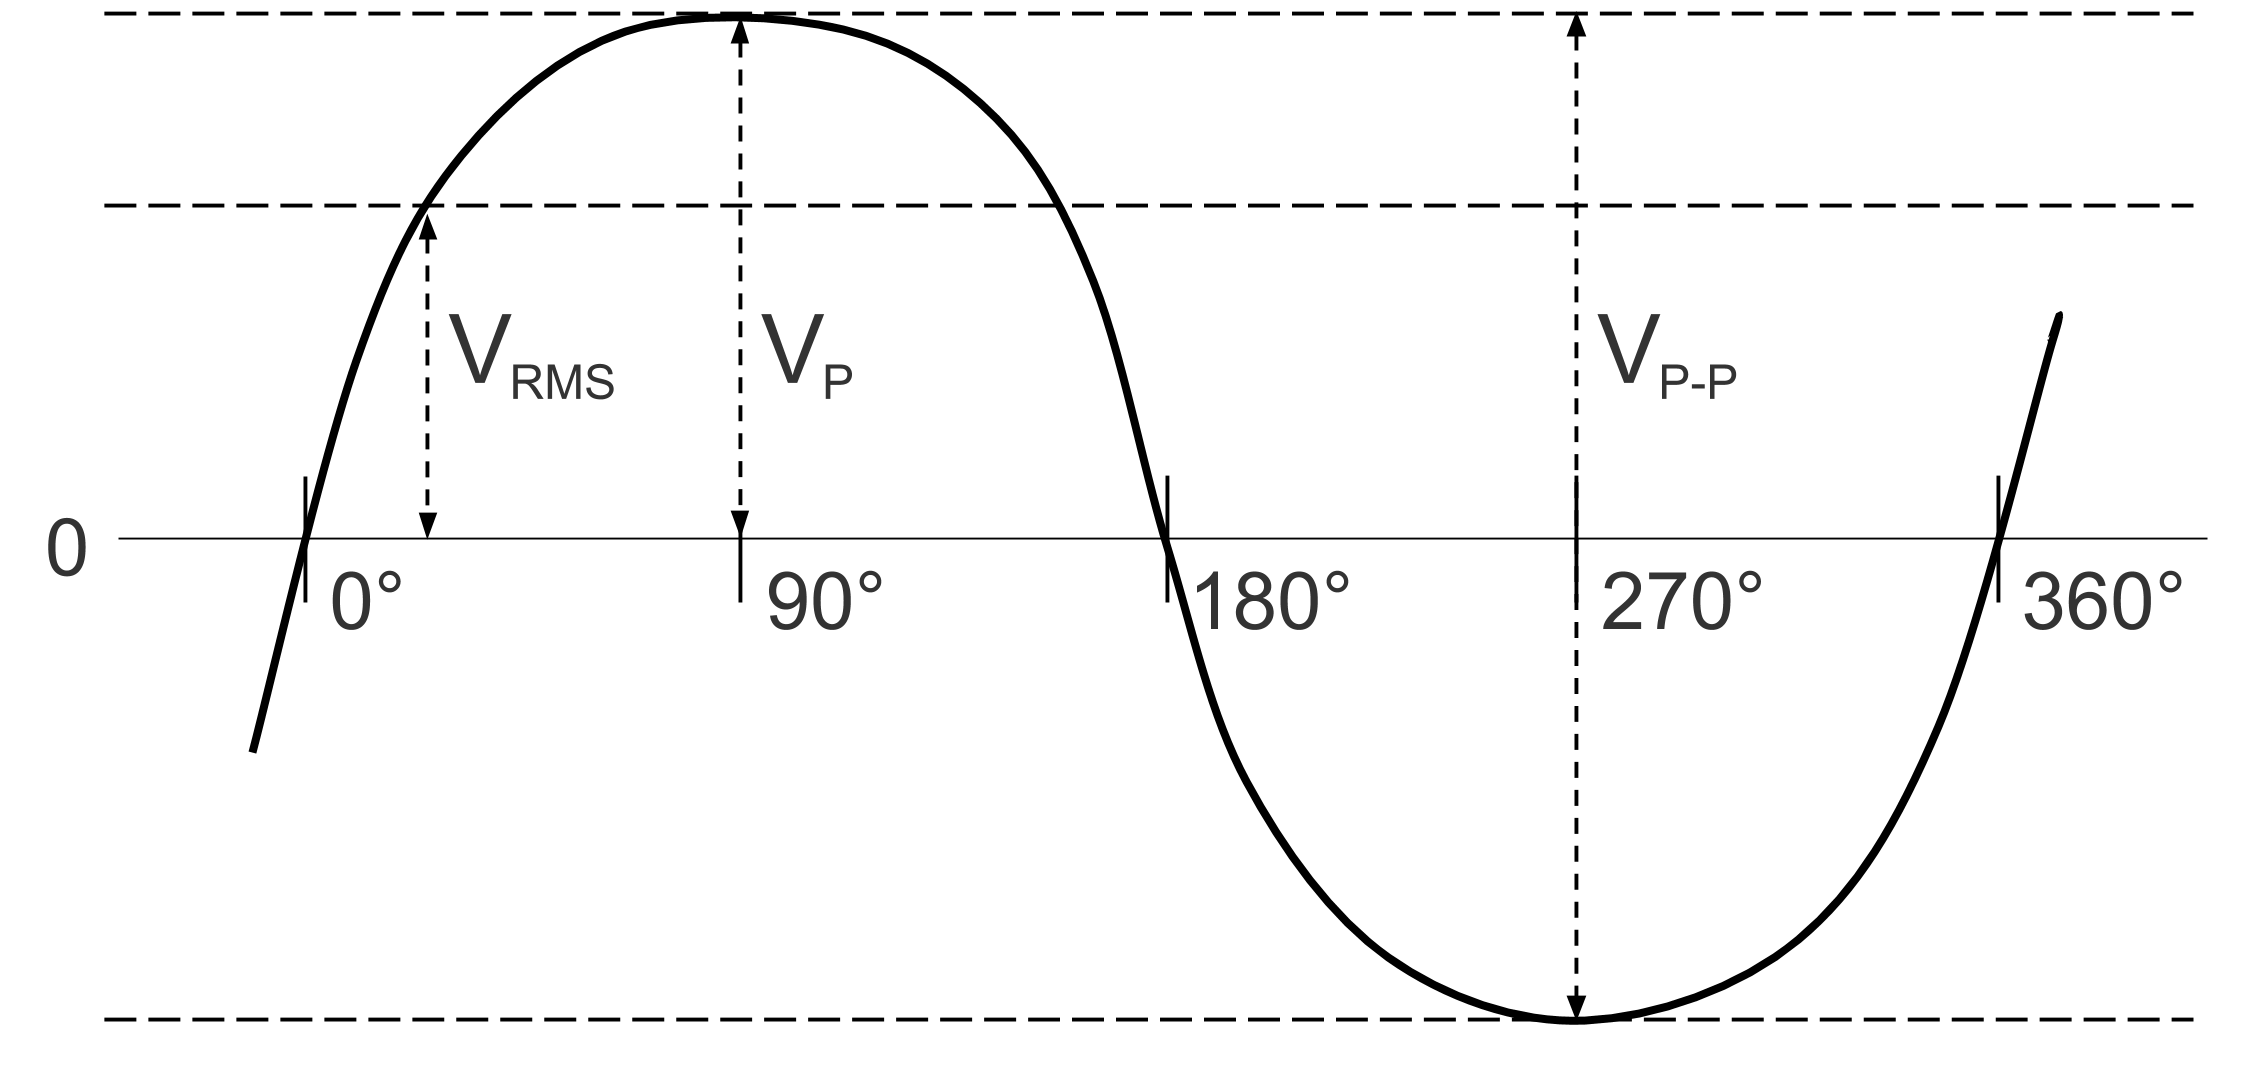 Voltage waveform with peak voltage, peak-to-peak voltage, and RMS voltage marked.